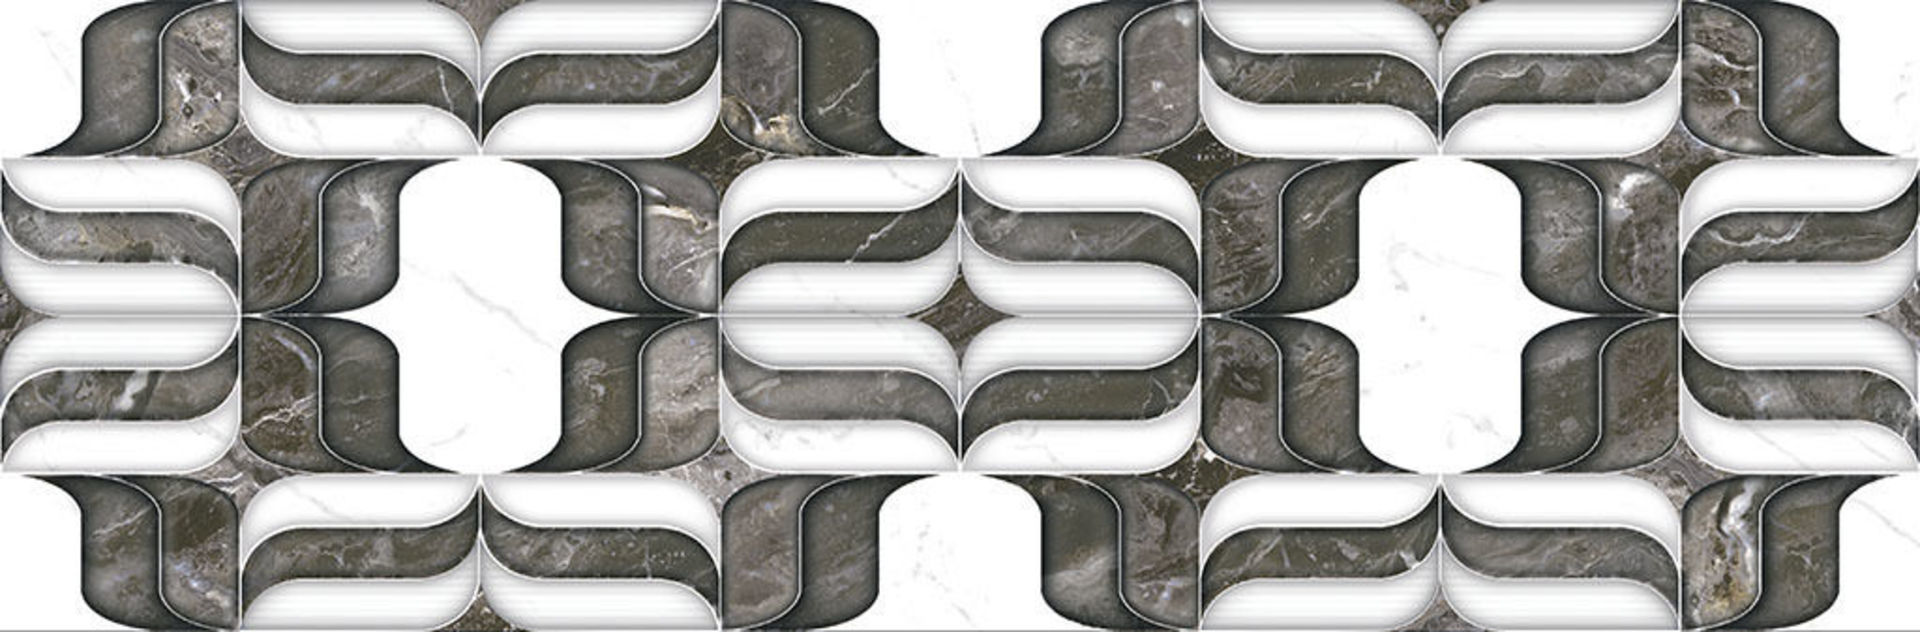 Керамическая плитка ESTATUARIO DEC DAMASC 33*100 / коллекция ESTATUARIO-NERO / производитель Click Ceramica / страна Испания